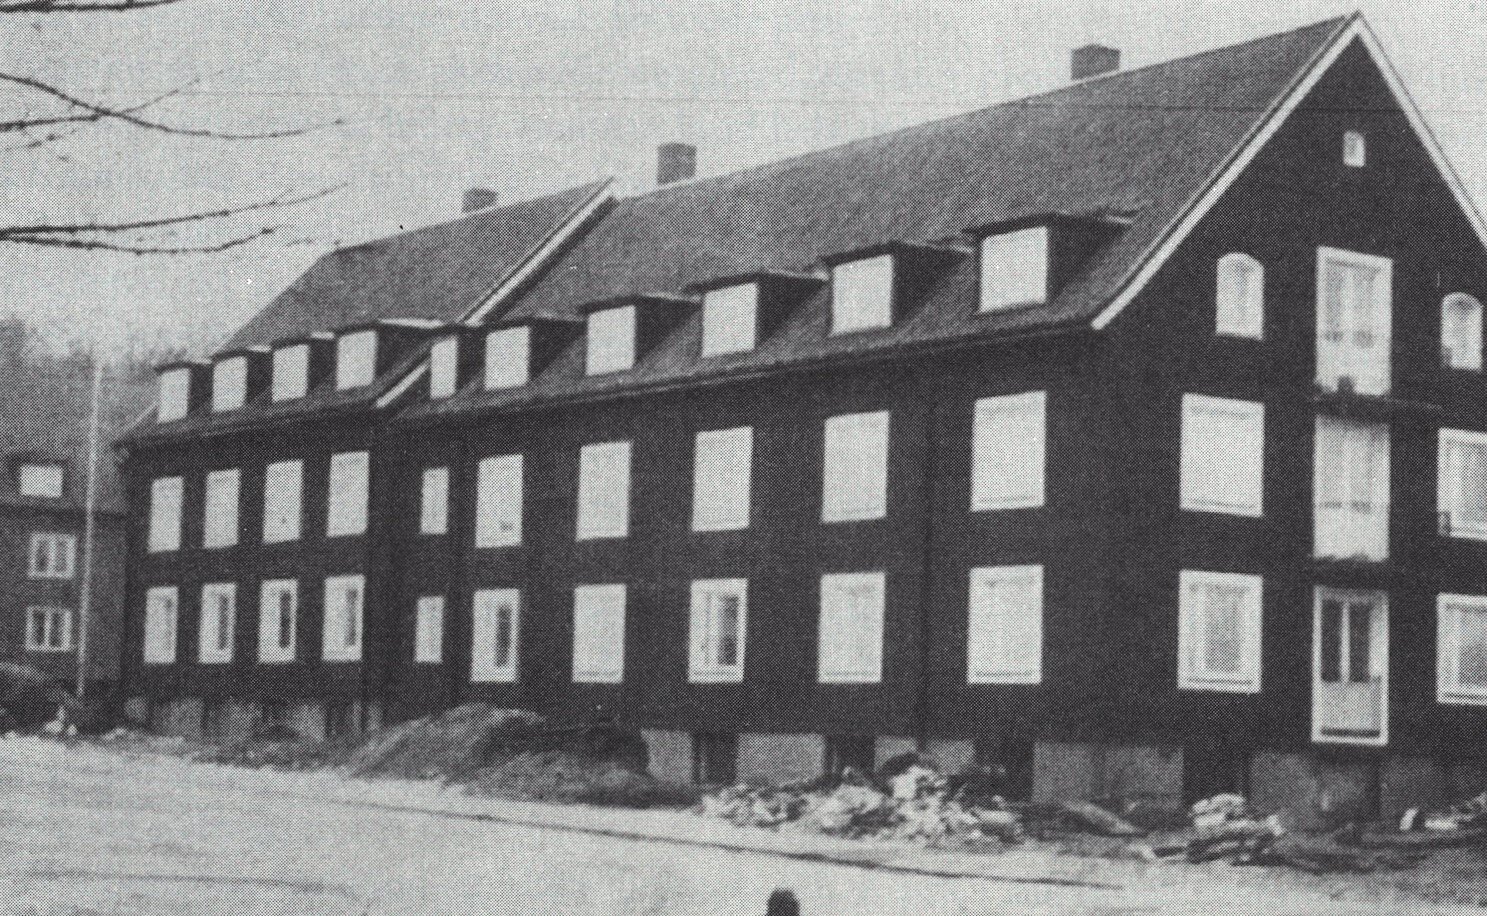   19-huset stod färdigt 1958.  Meningen var att annexet skulle påminna om en ladugård, då Västgötagården 17 utgjorde boningshuset.  